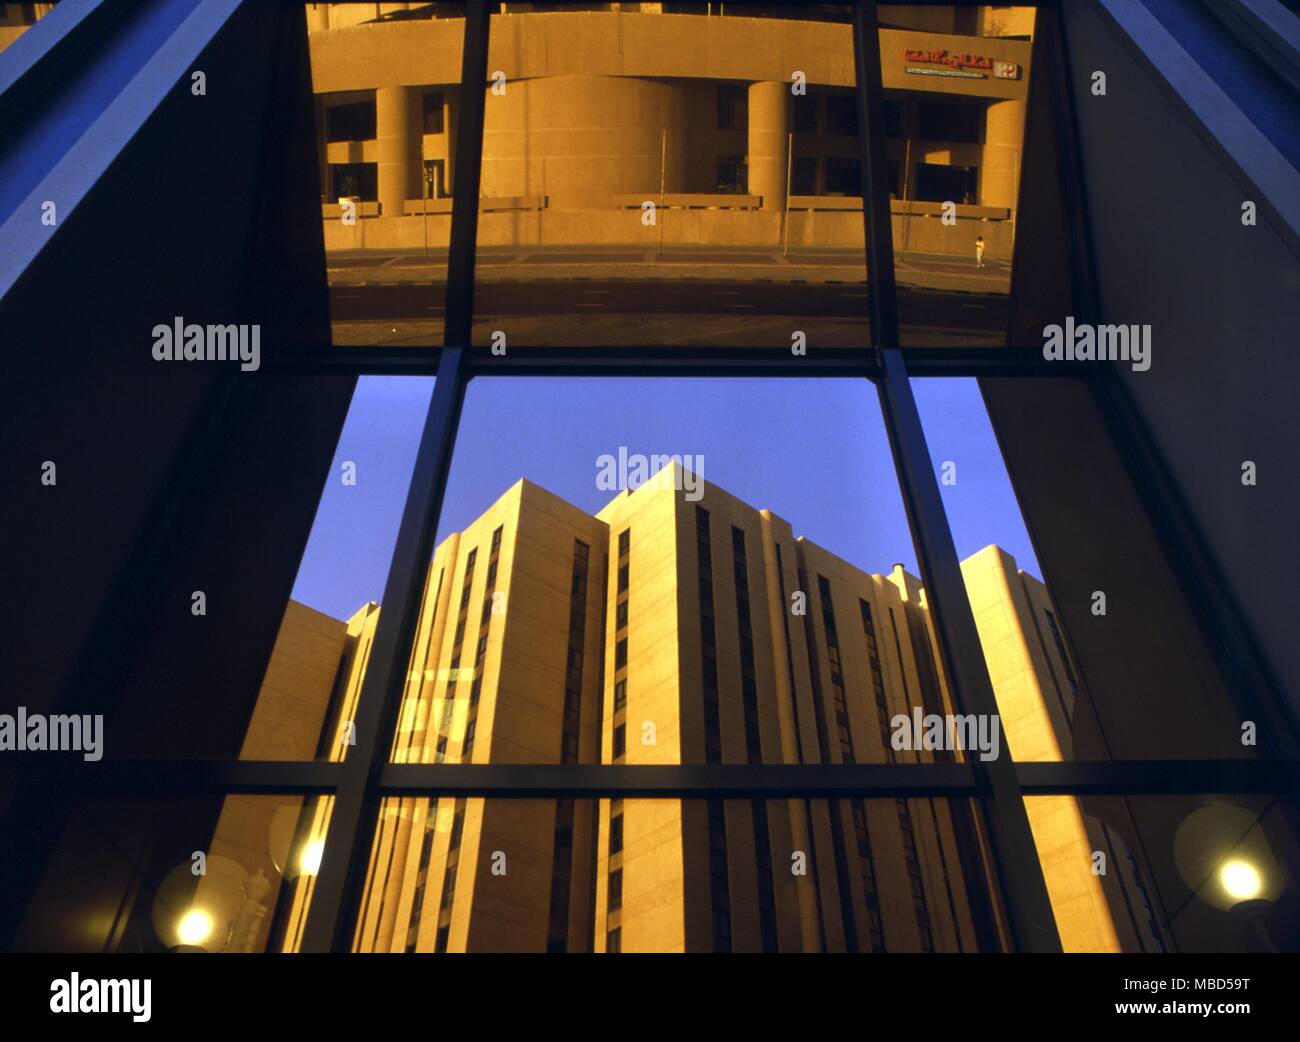 Symbole - Fenster. Moderne Fenster mit Reflexion von Gebäuden. Das Fenster sieht nach innen und nach außen, damit seine Bedeutung als Symbol des Ritus der Passage. Hotel Meridien, Kuwait. Stockfoto